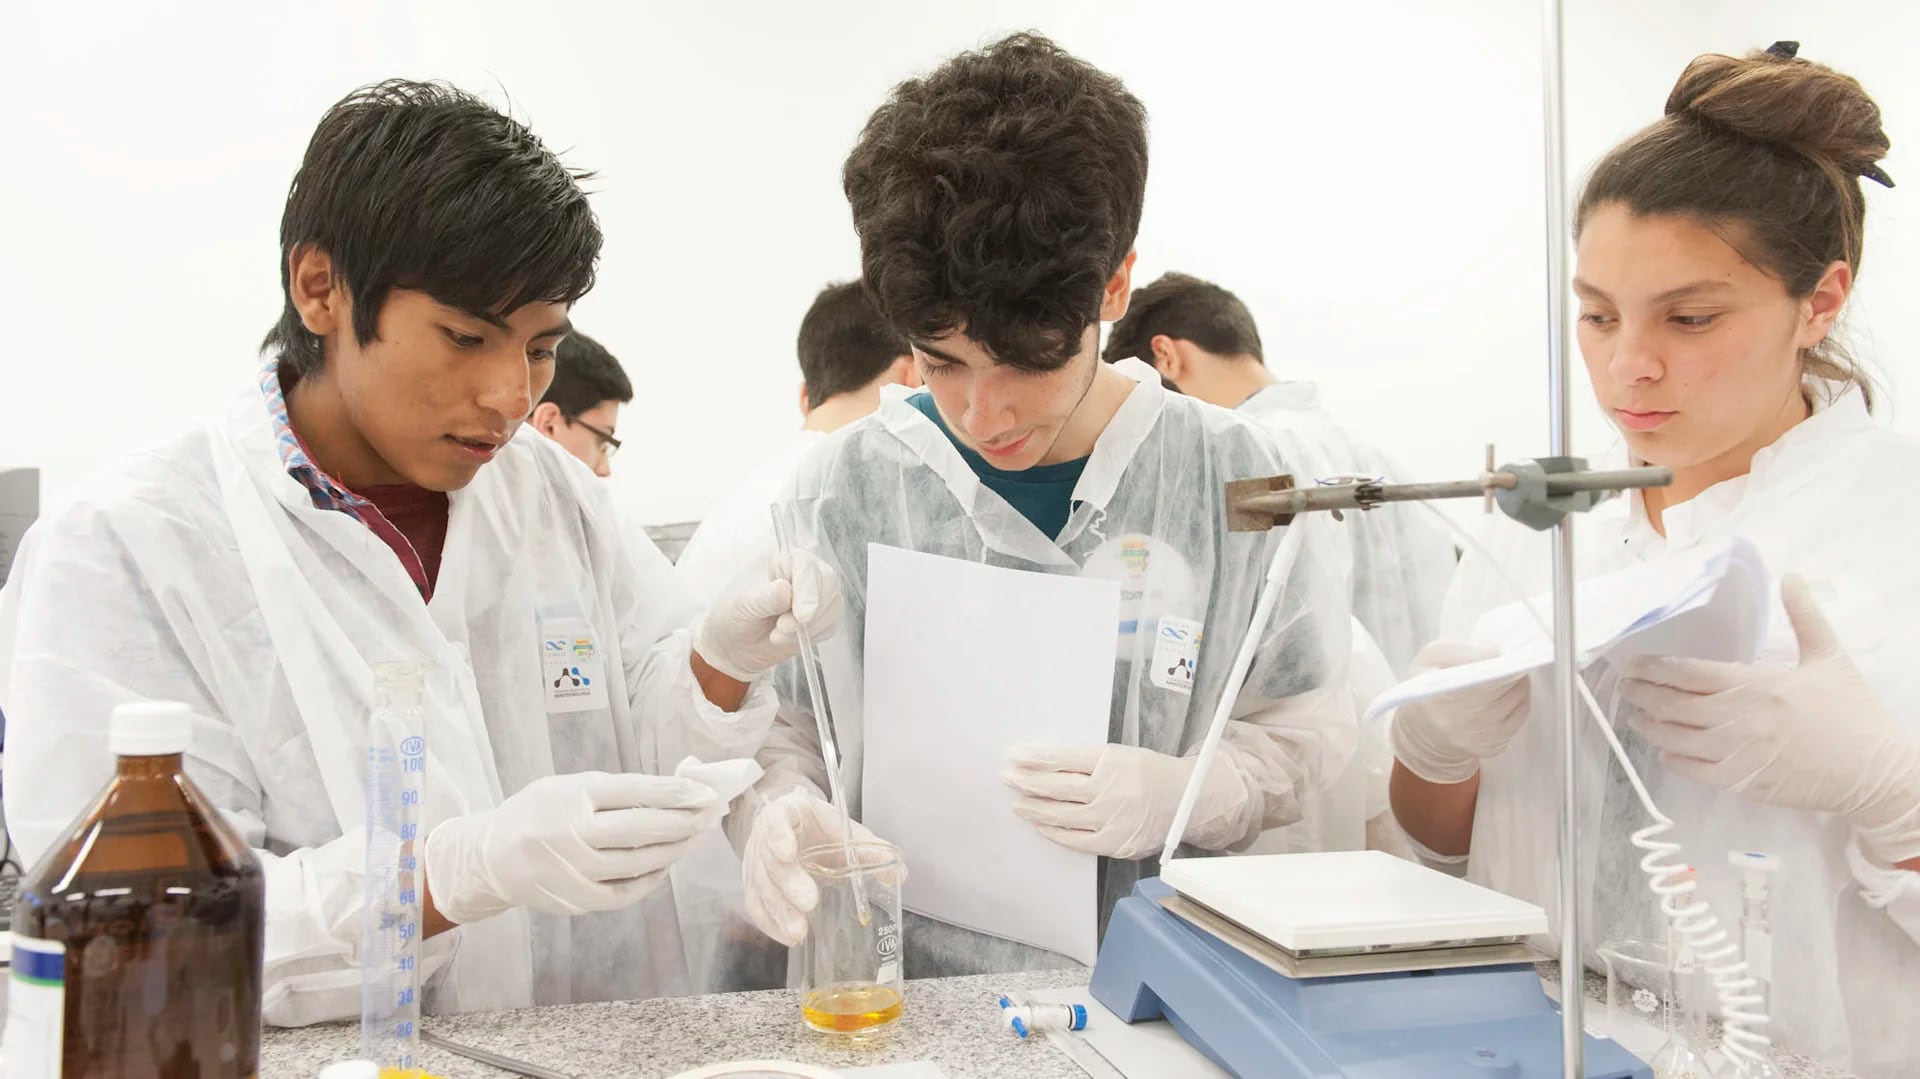 Chicos de distintas escuelas tiene la oportunidad de experimentar con nanotecnología (MINCyT)